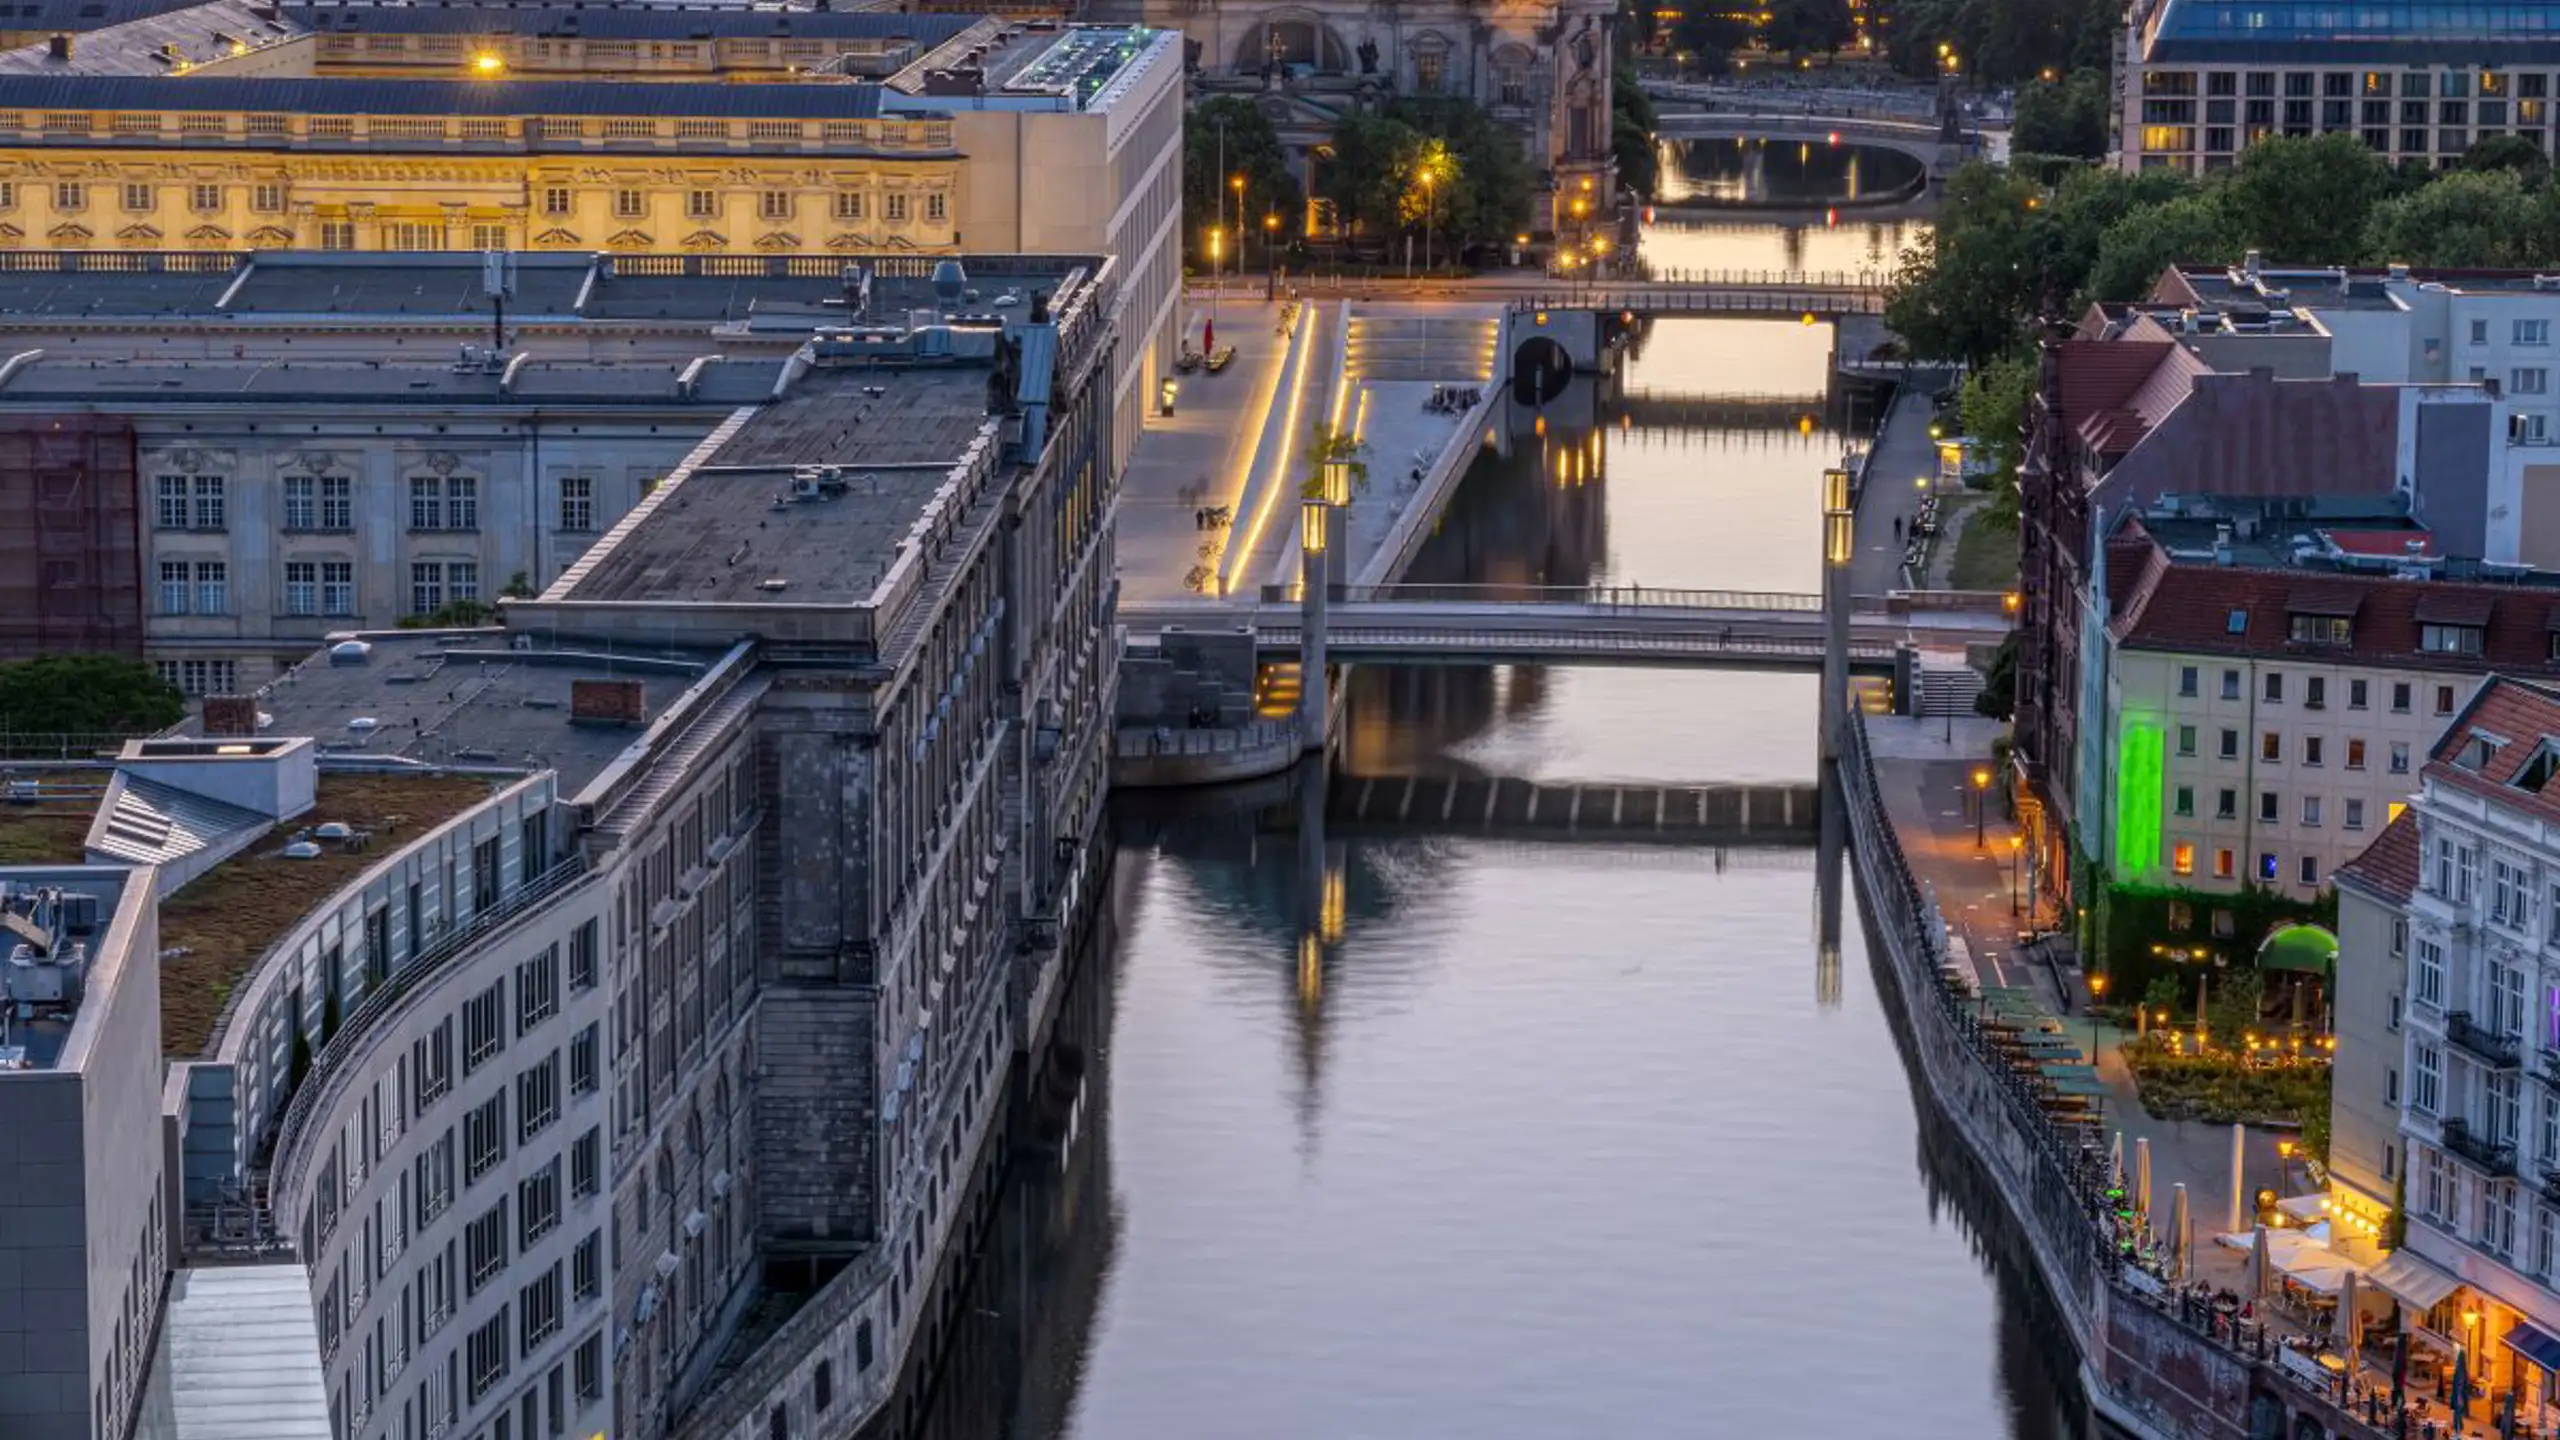 Sunset At The River Spree In Berlin 2023 11 27 04 55 11 Utc (2)